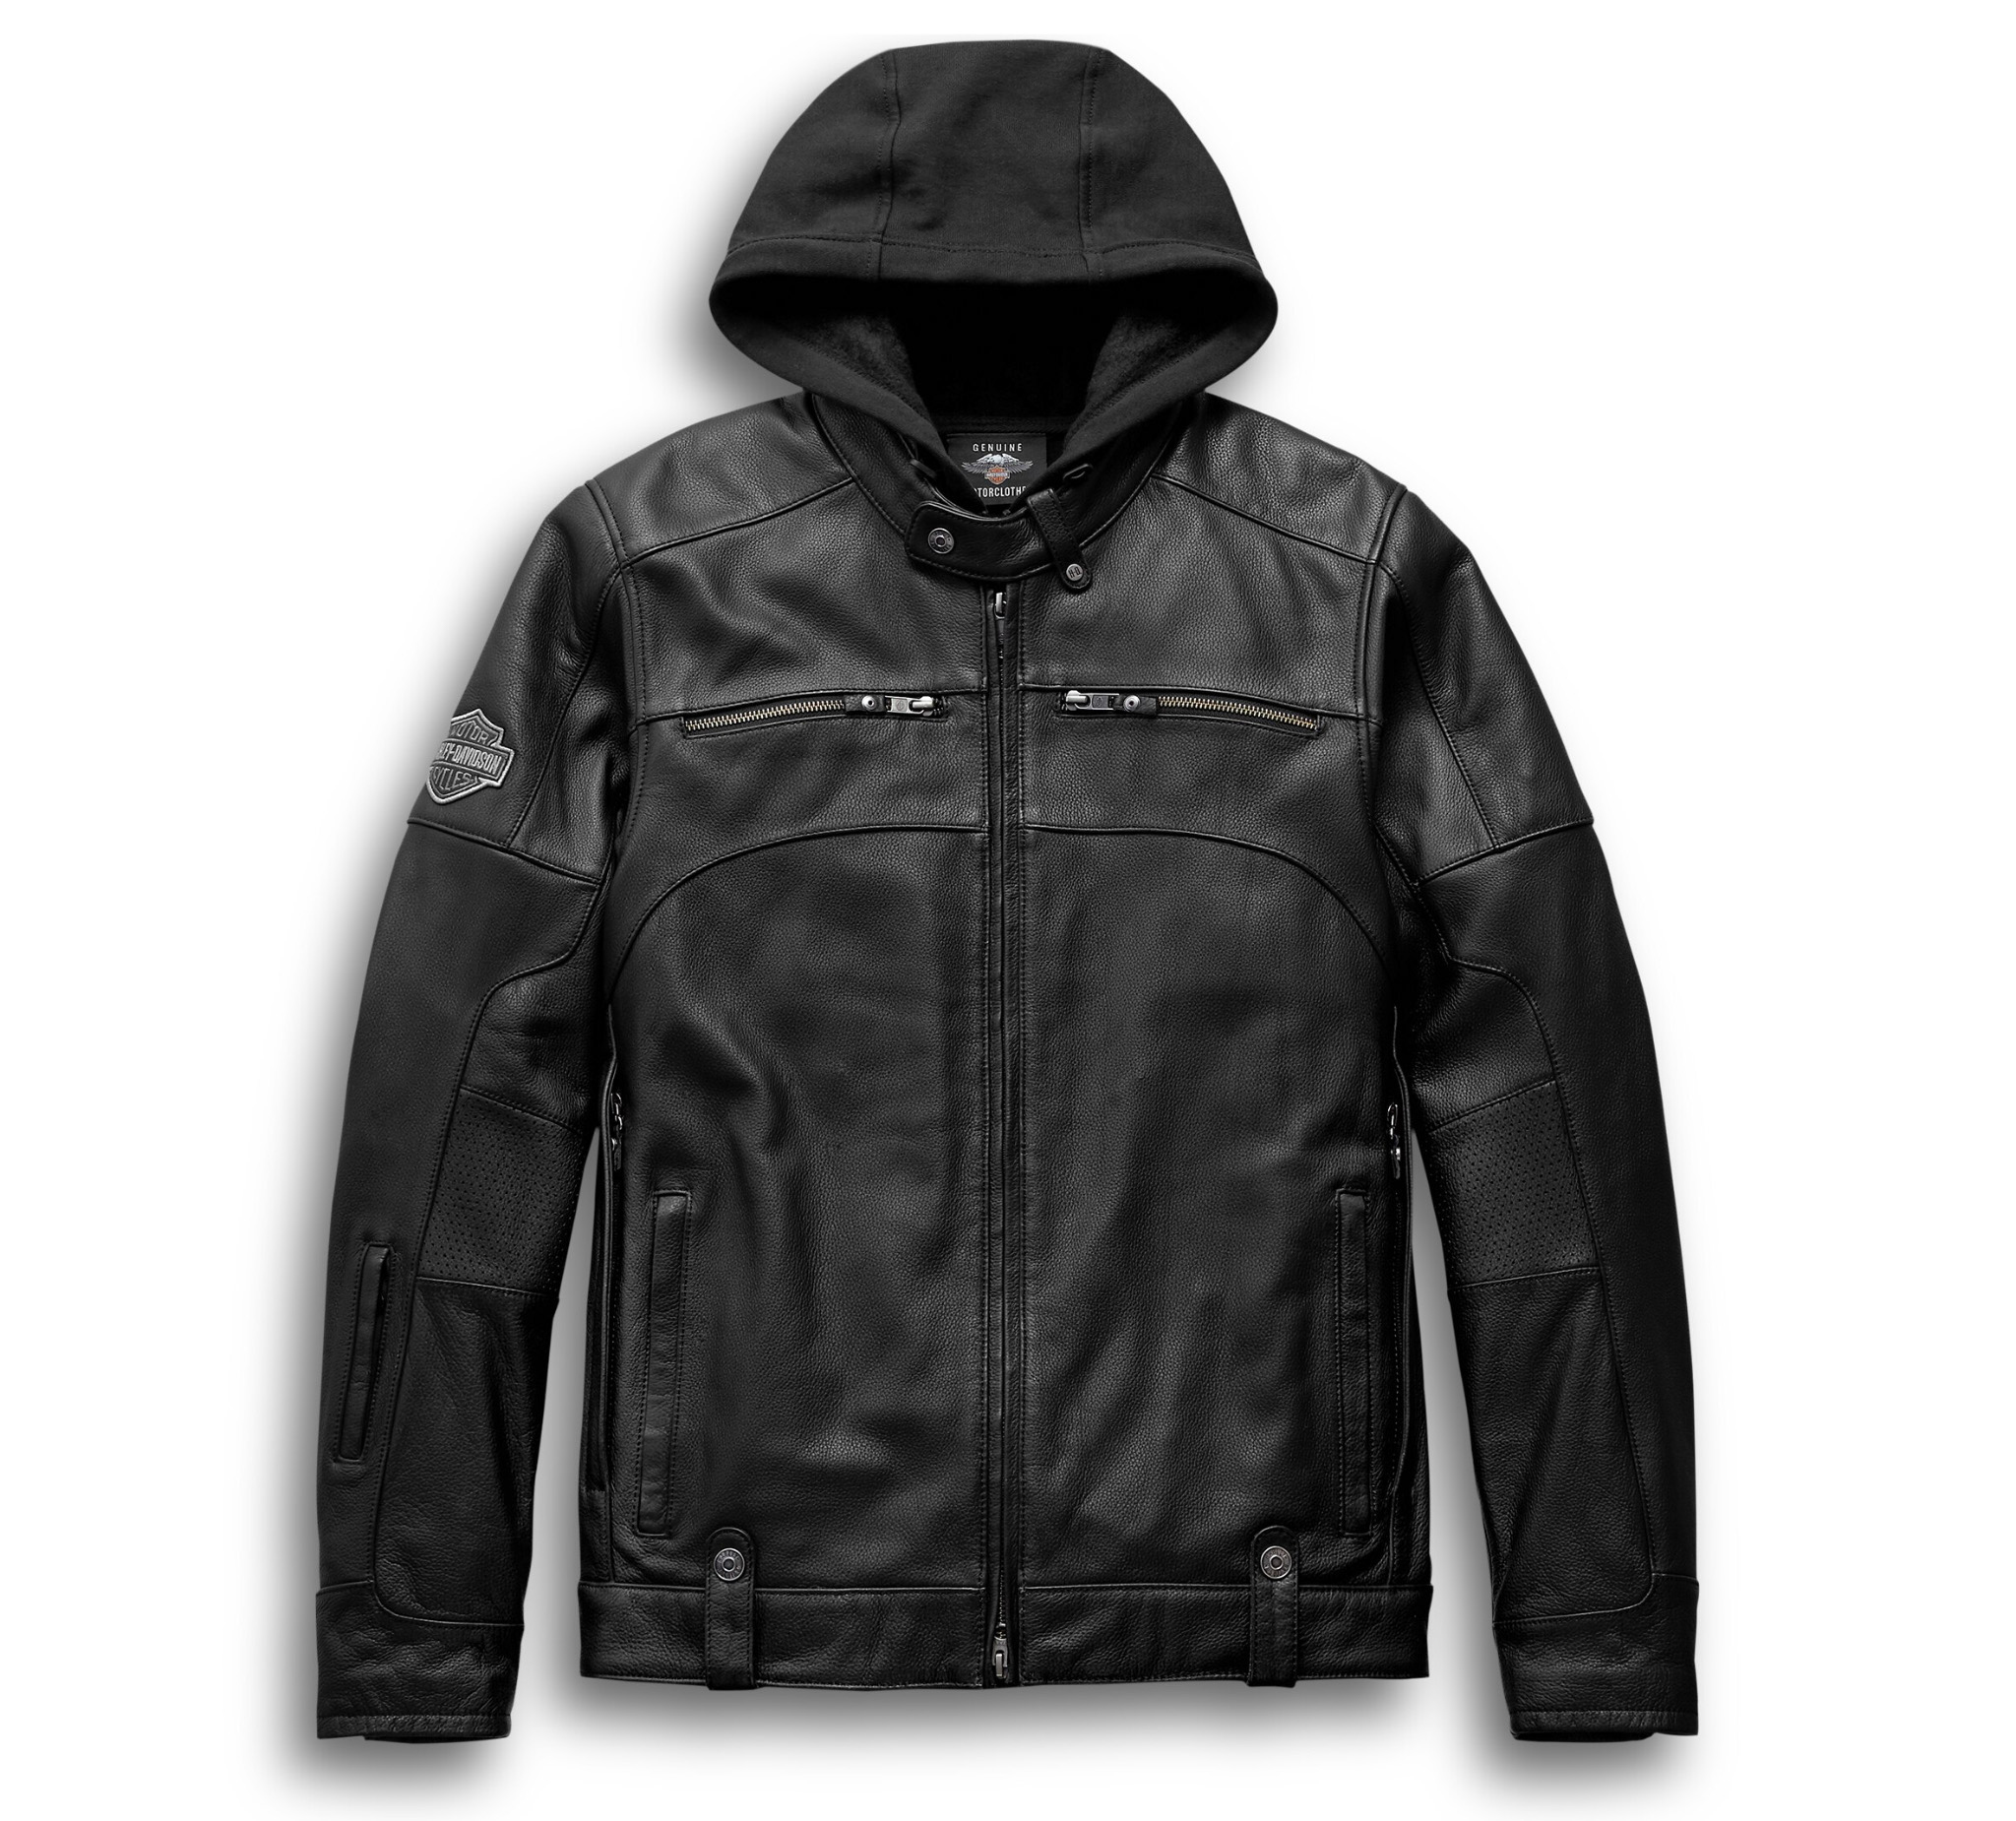 Harley Davidson Men's Biker Genuine Leather Jackets – Ruby Leather